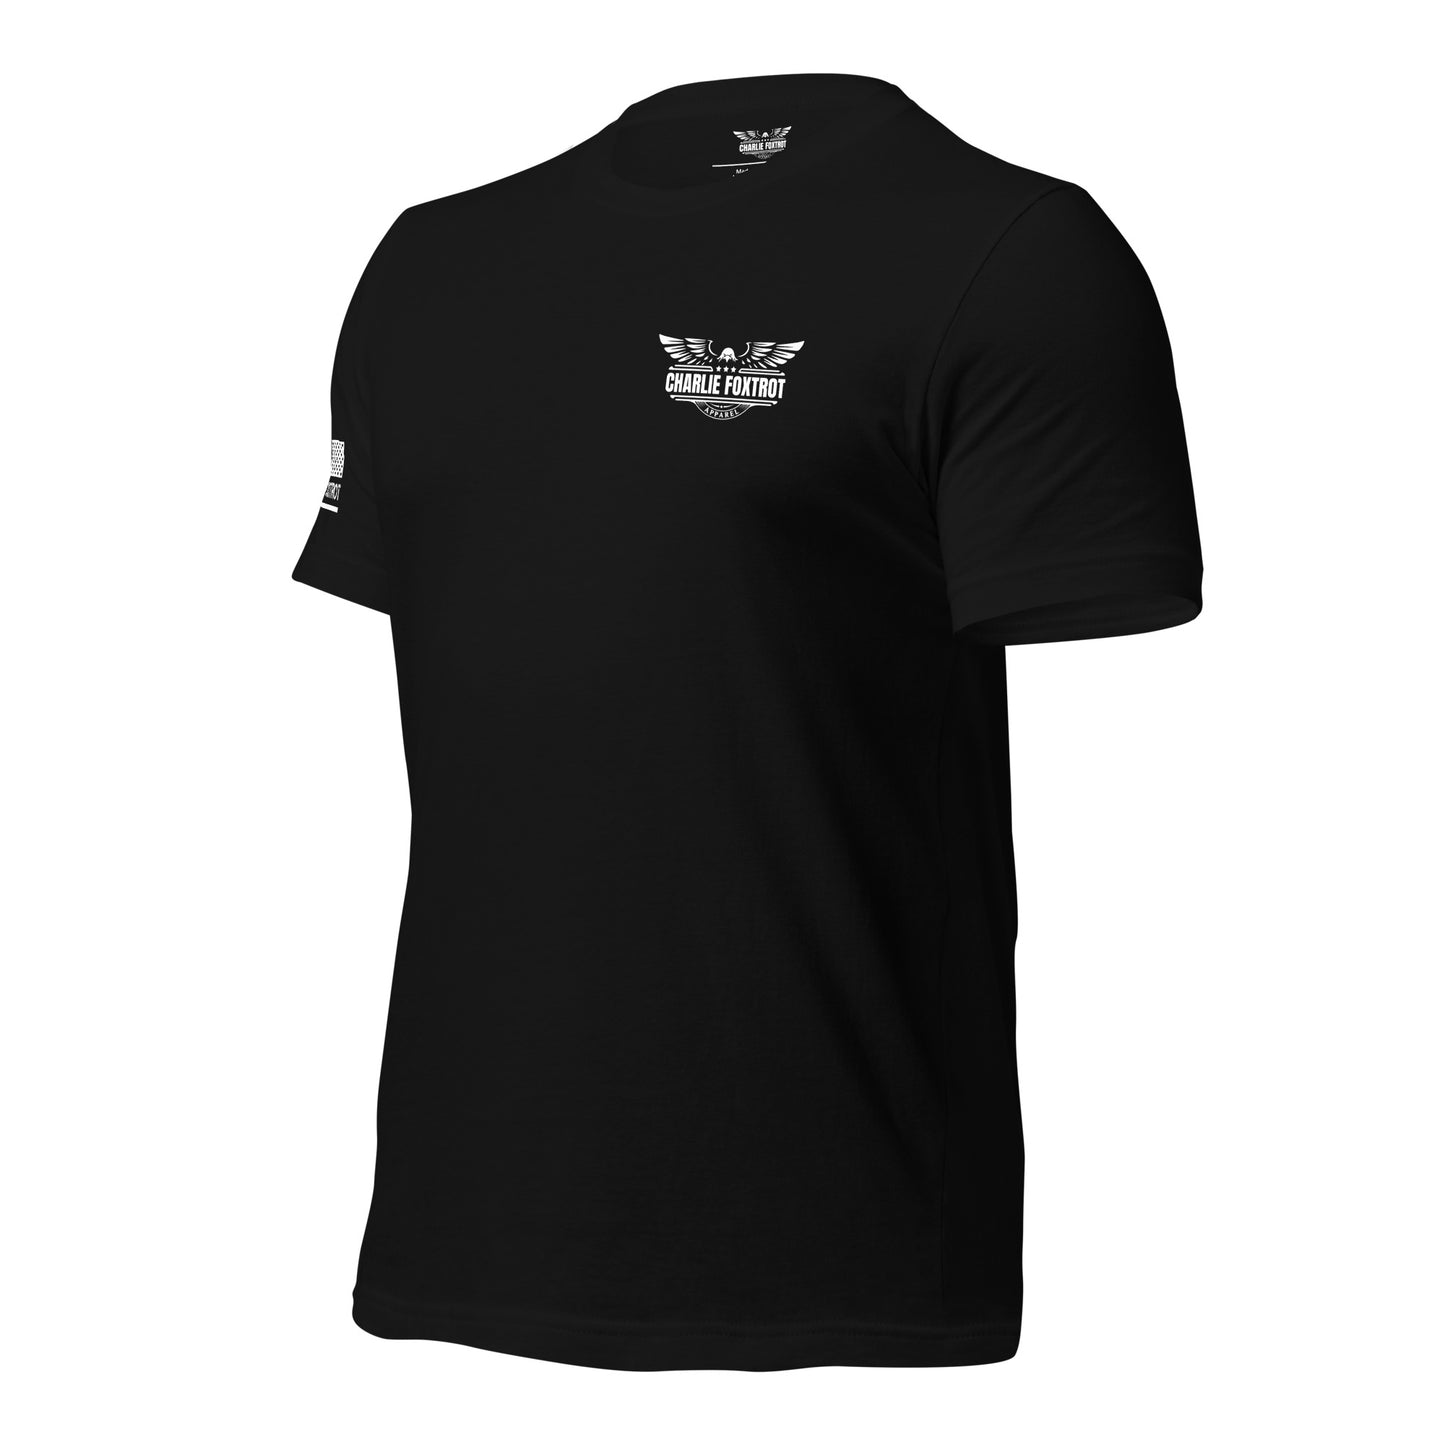 United States Army Unisex T-shirt